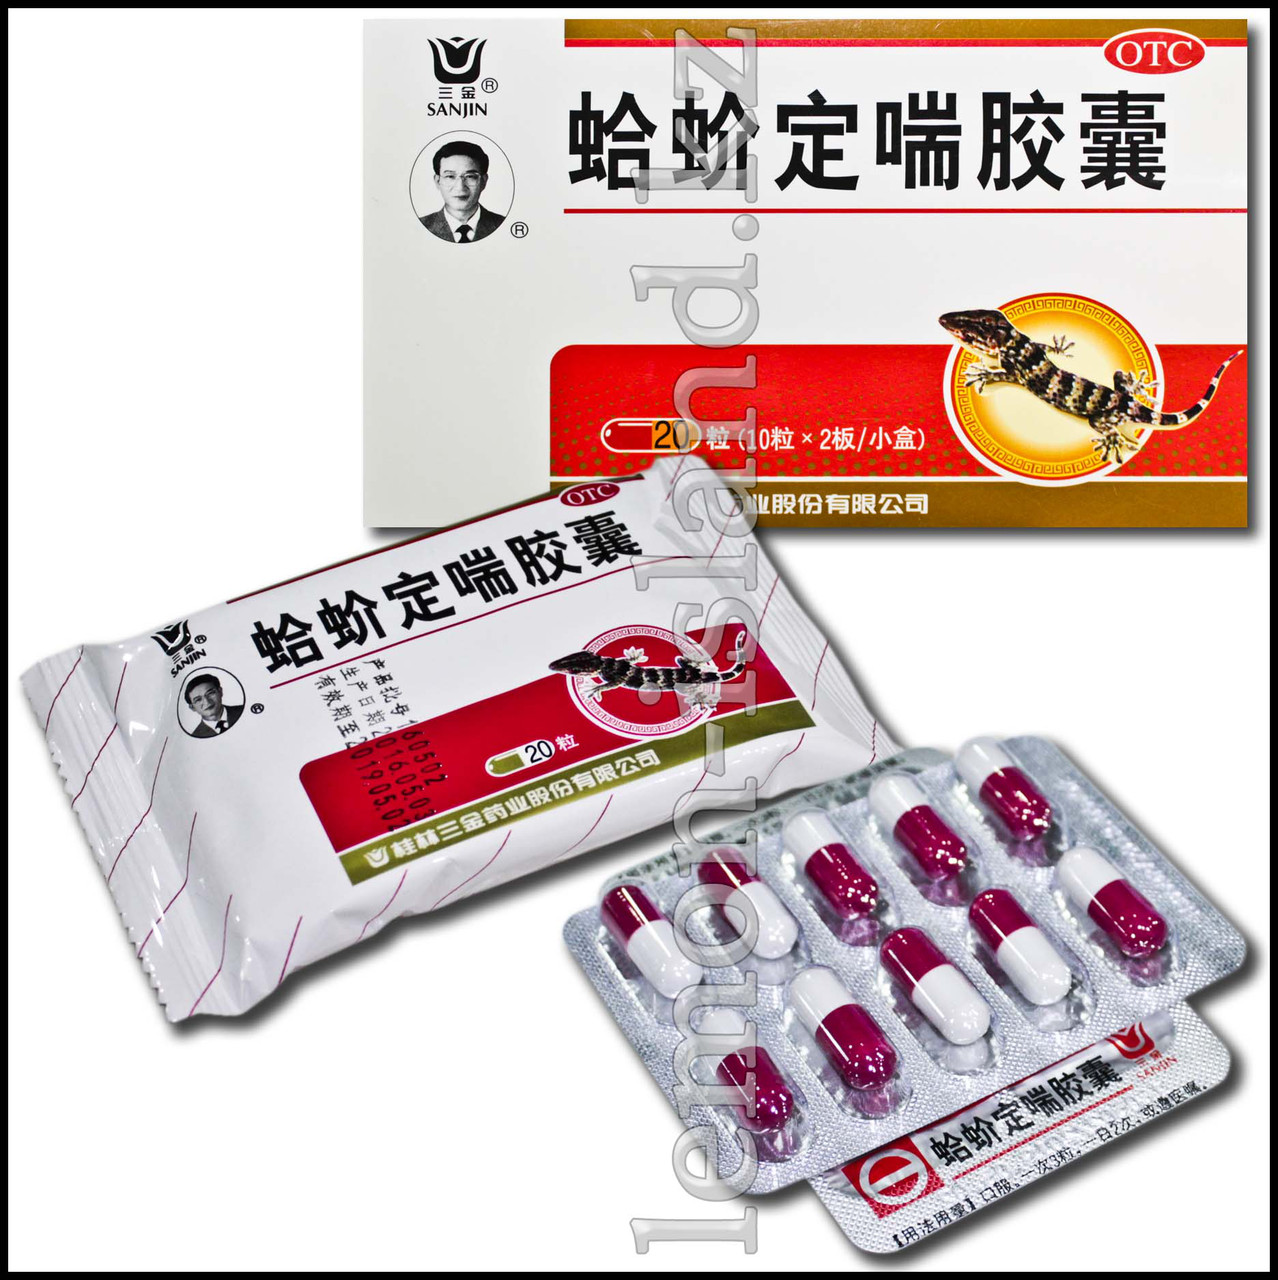 Капсулы для лечения бронхолёгочных заболеваний "Геккон" (Gejie Ding Chuan Jiaonang, "Ящерка")